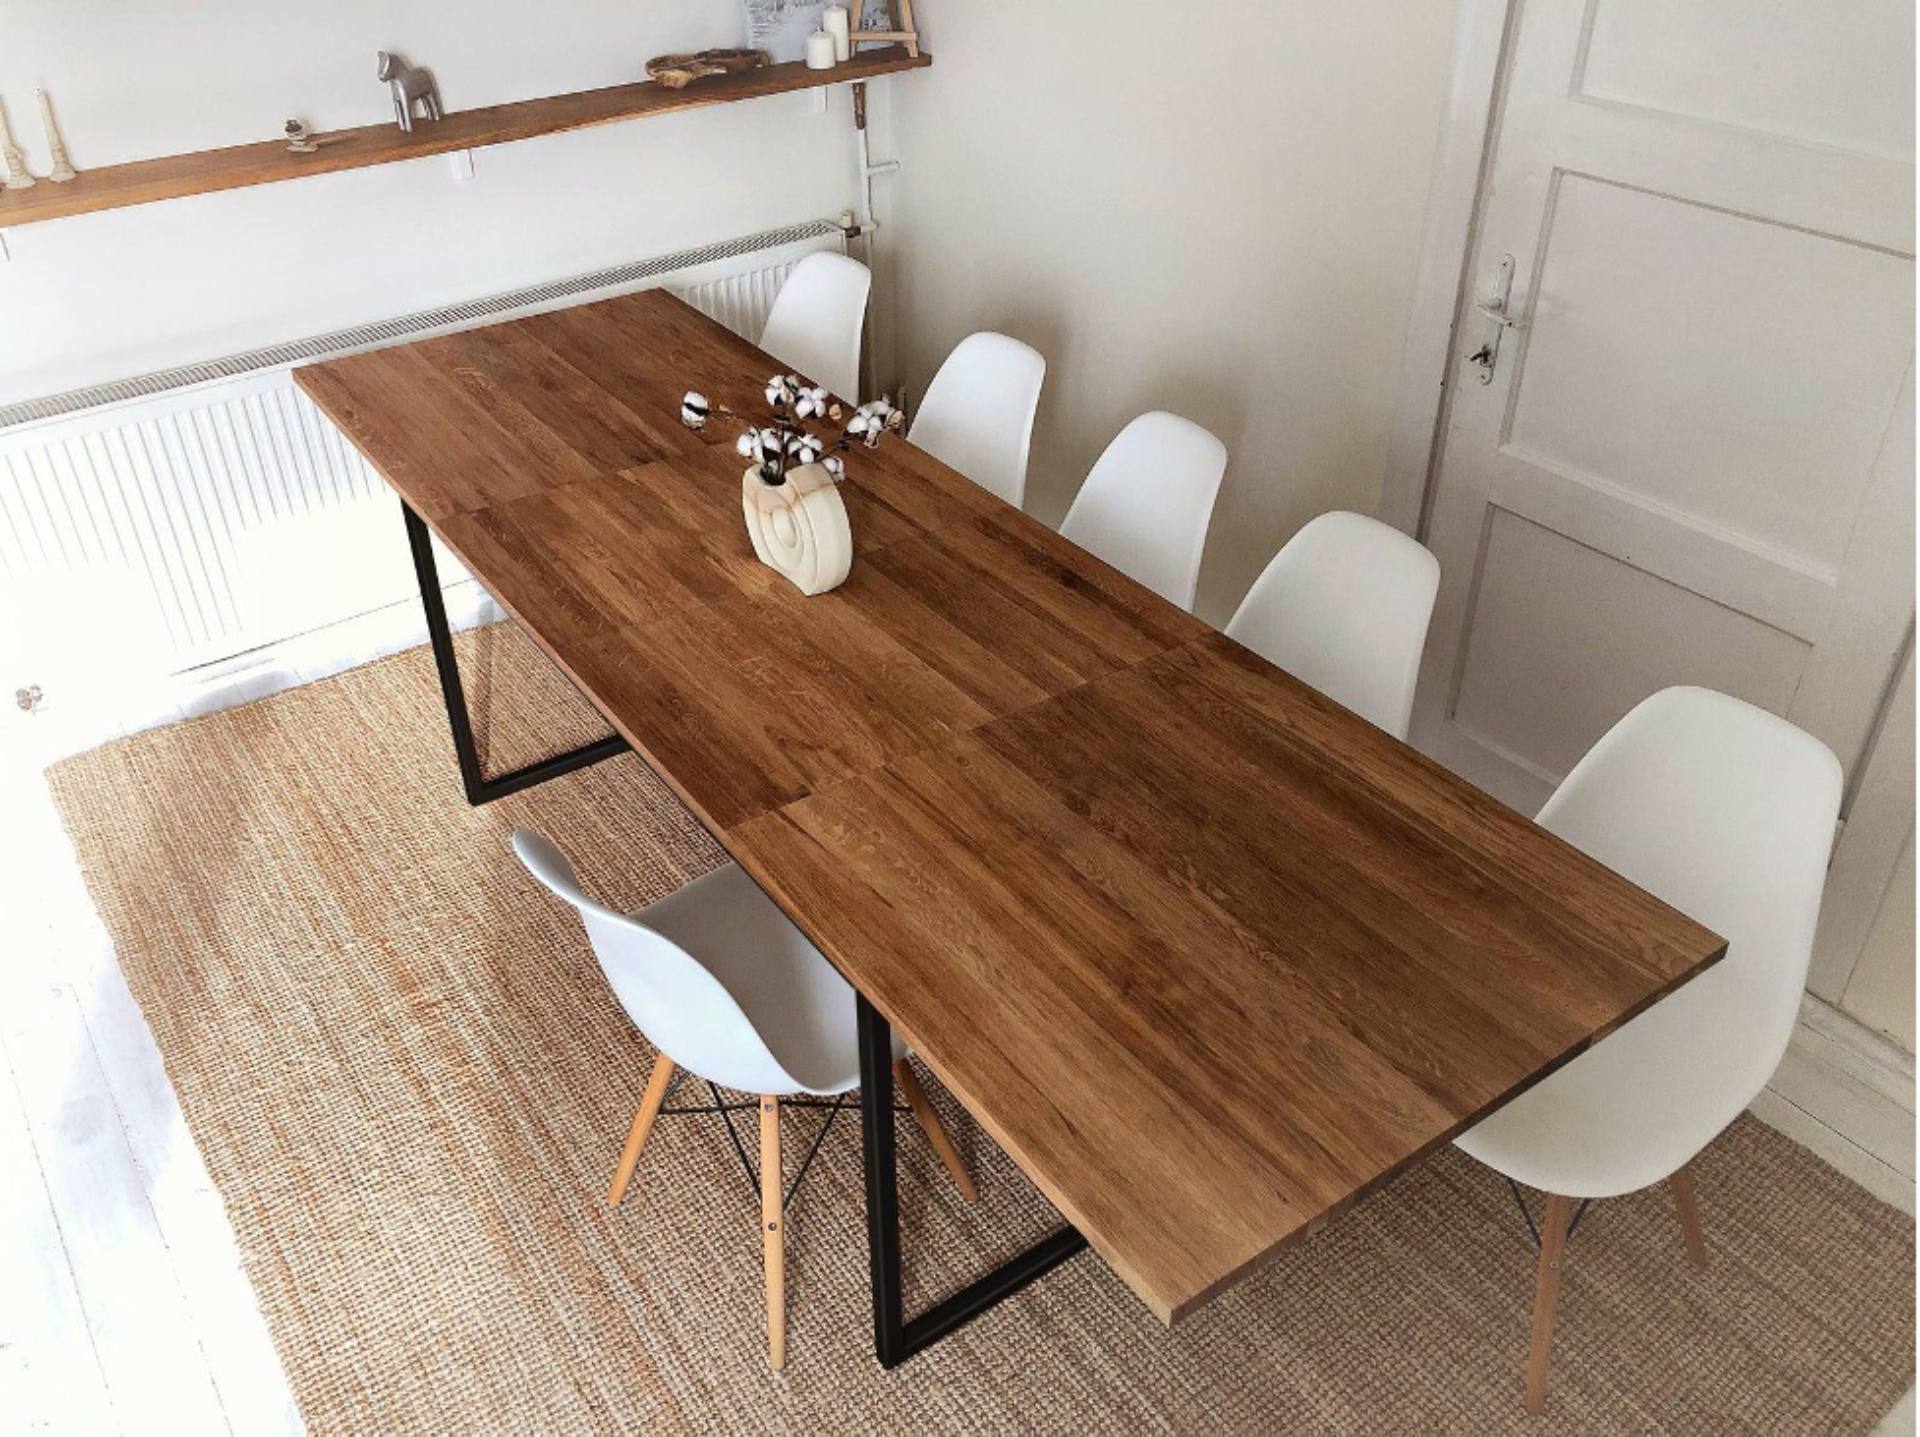 Vis extendable oak table